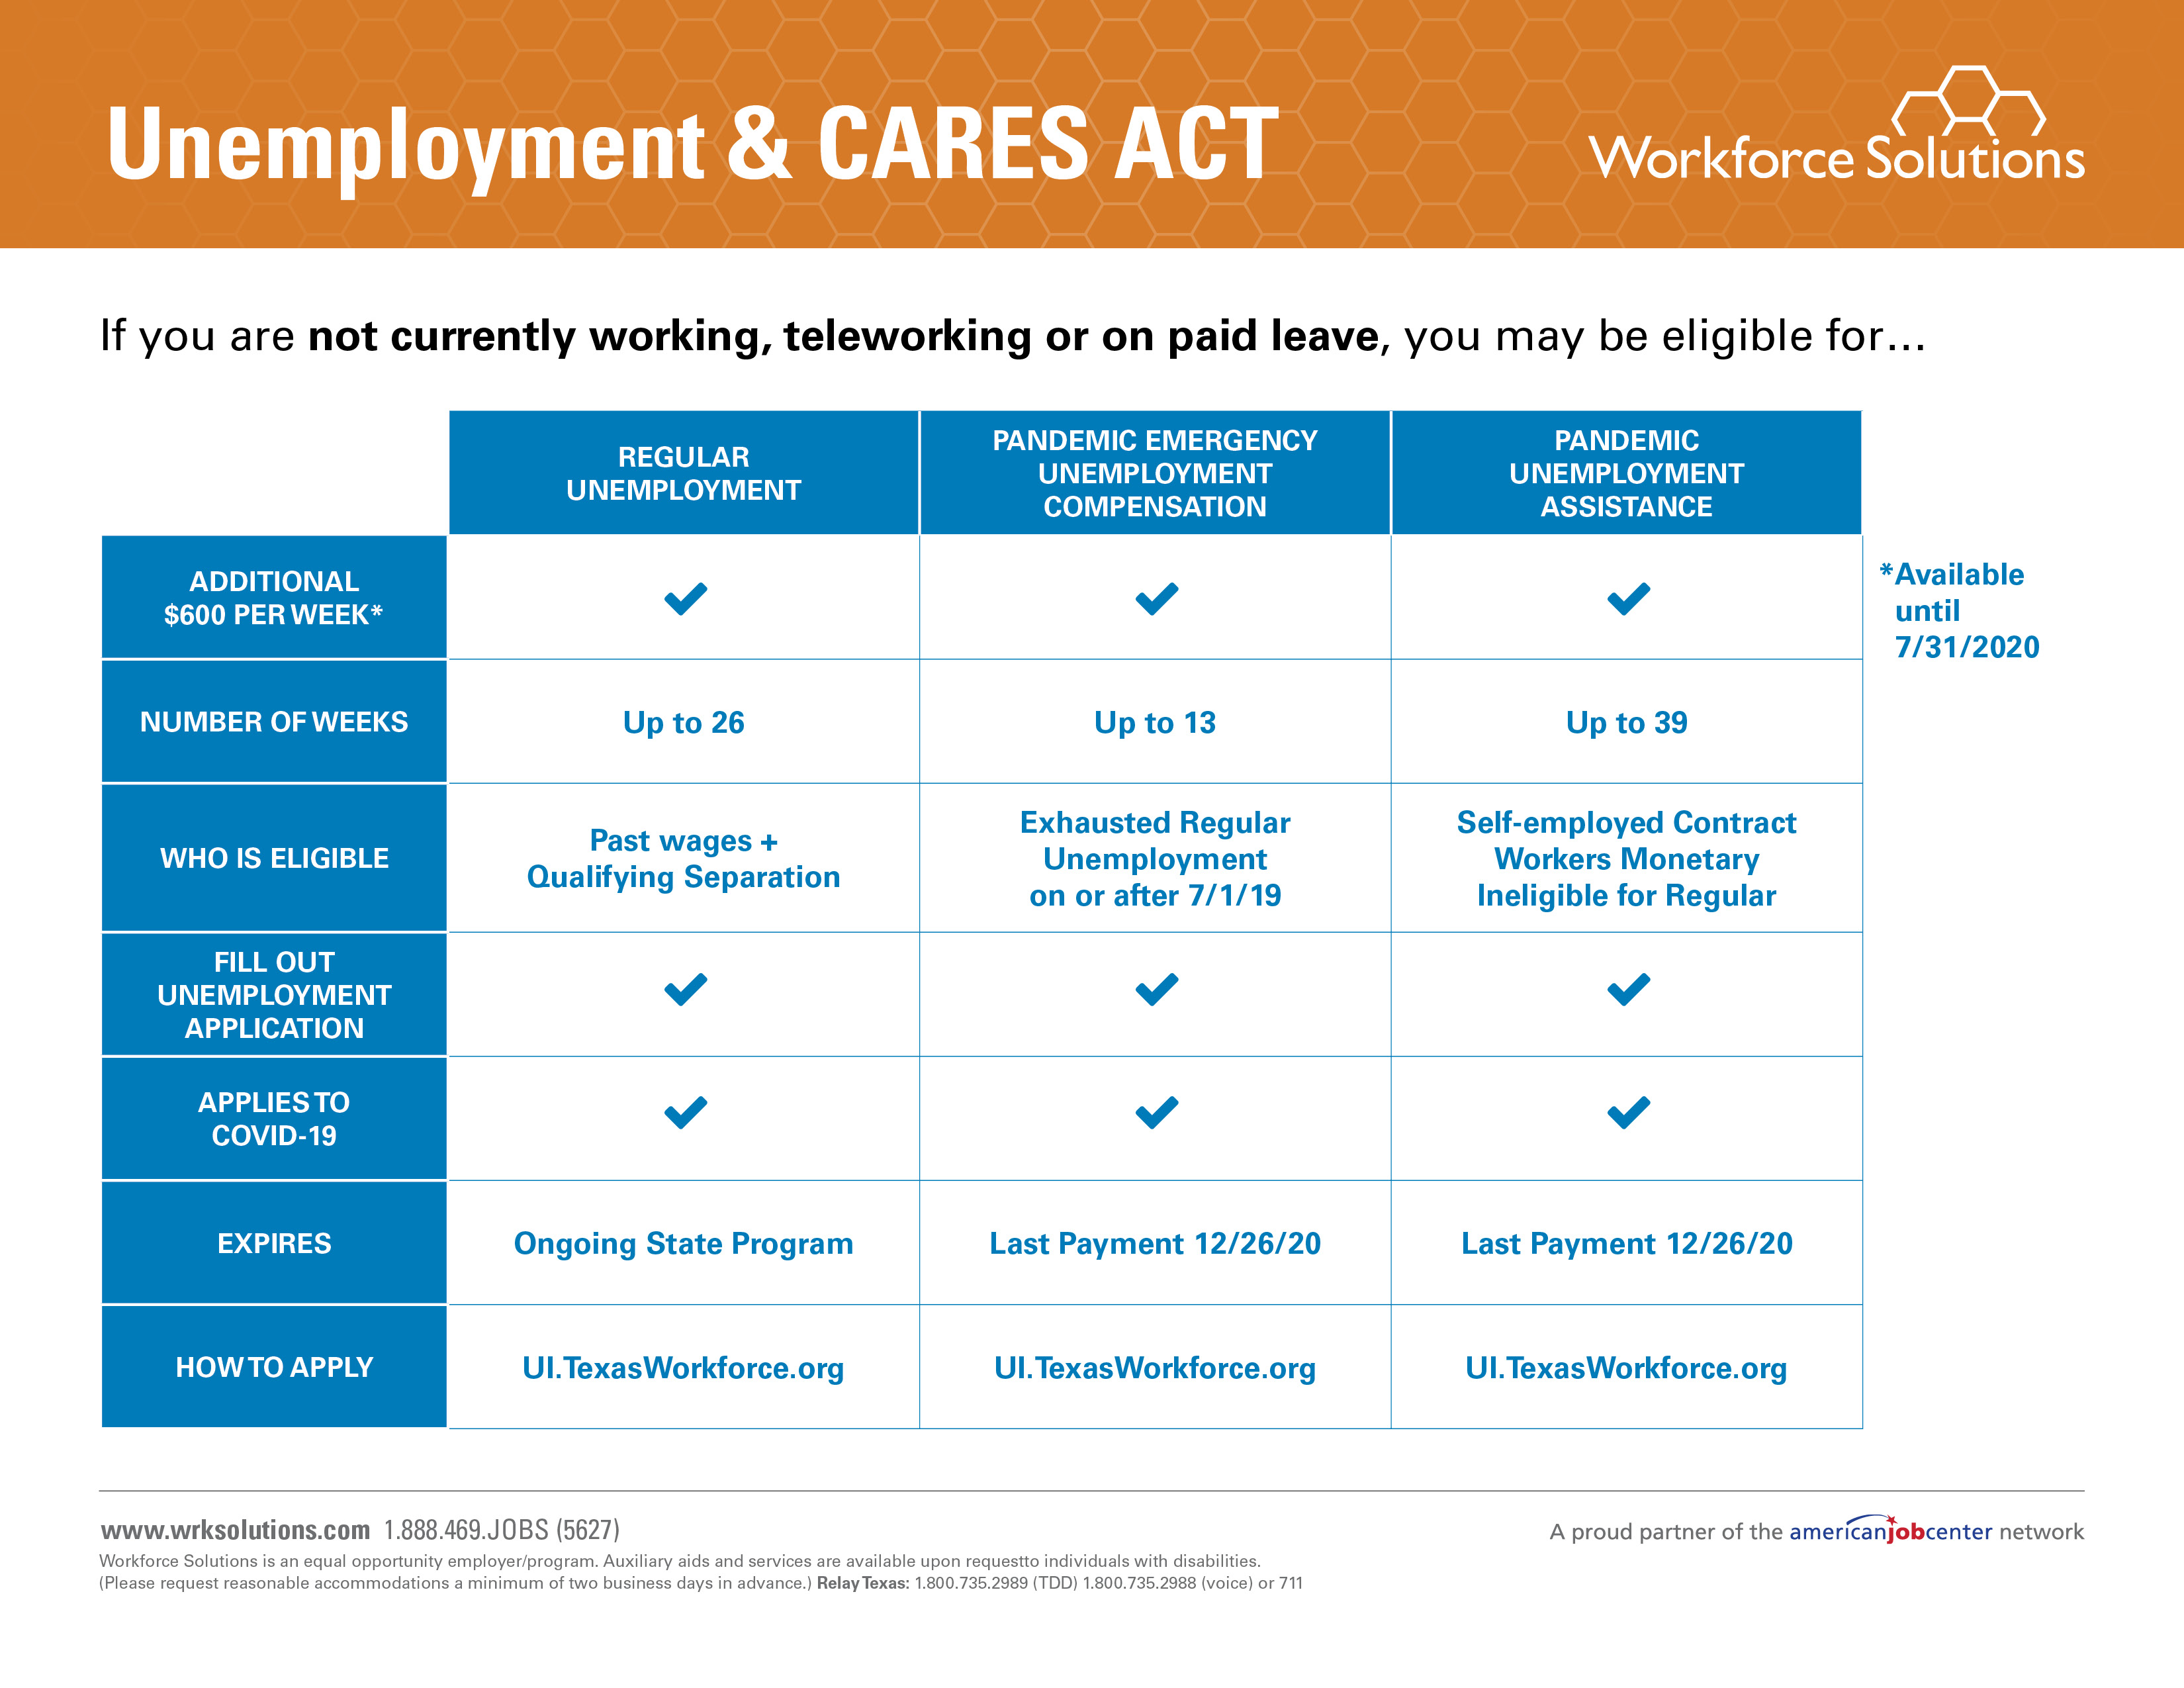 Unemployment & Cares Act